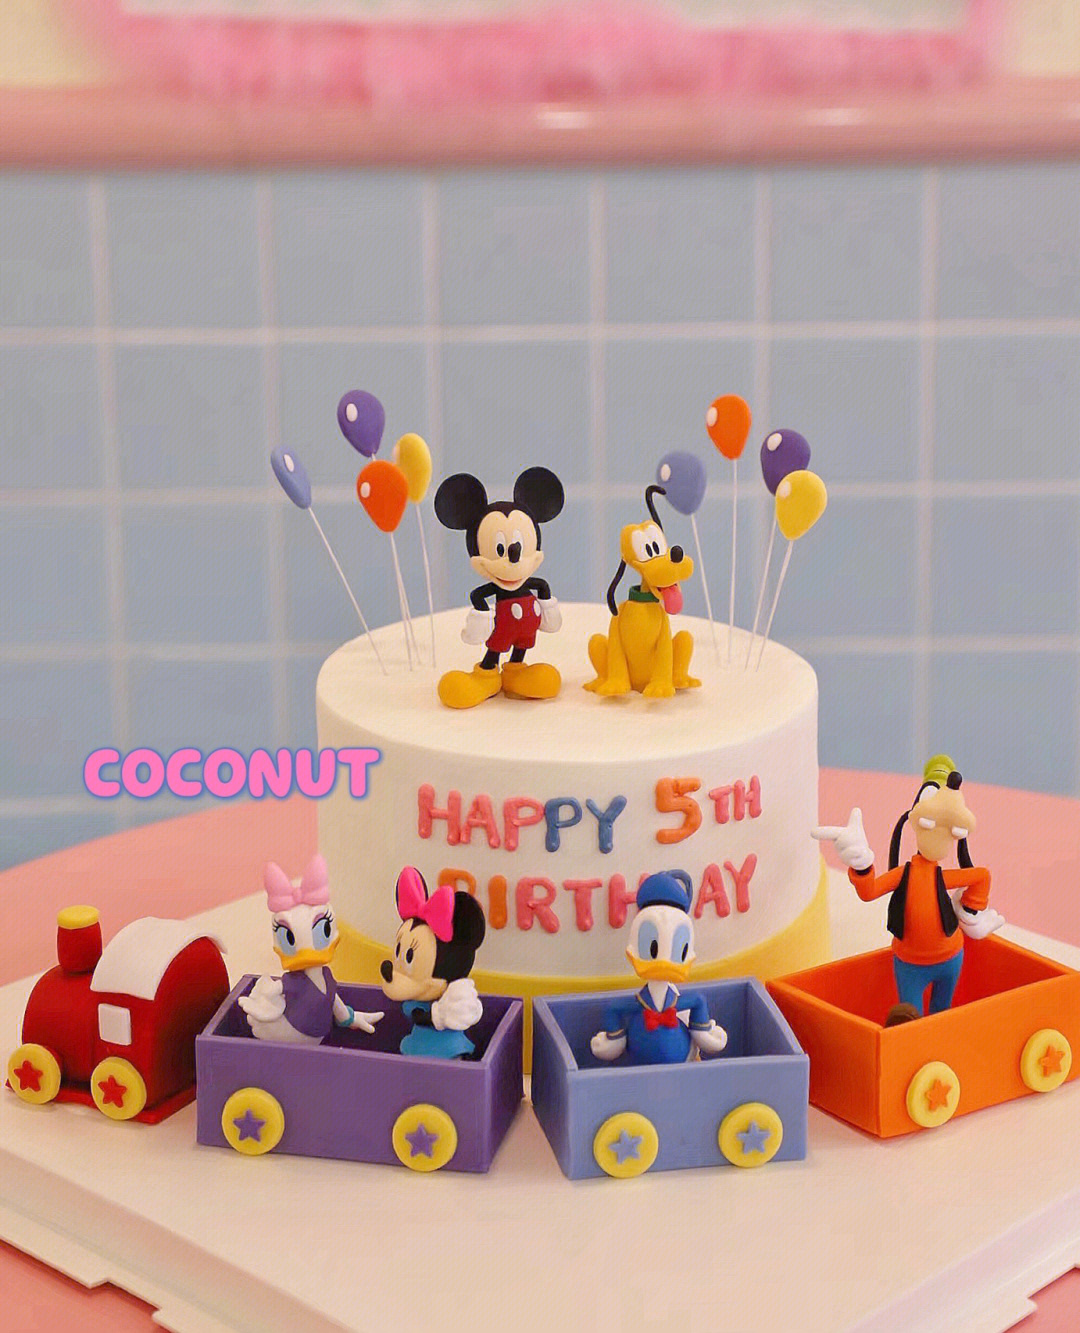 【生日】多啦A夢造型蛋糕 @ 傻妹的幸福日誌 :: 痞客邦